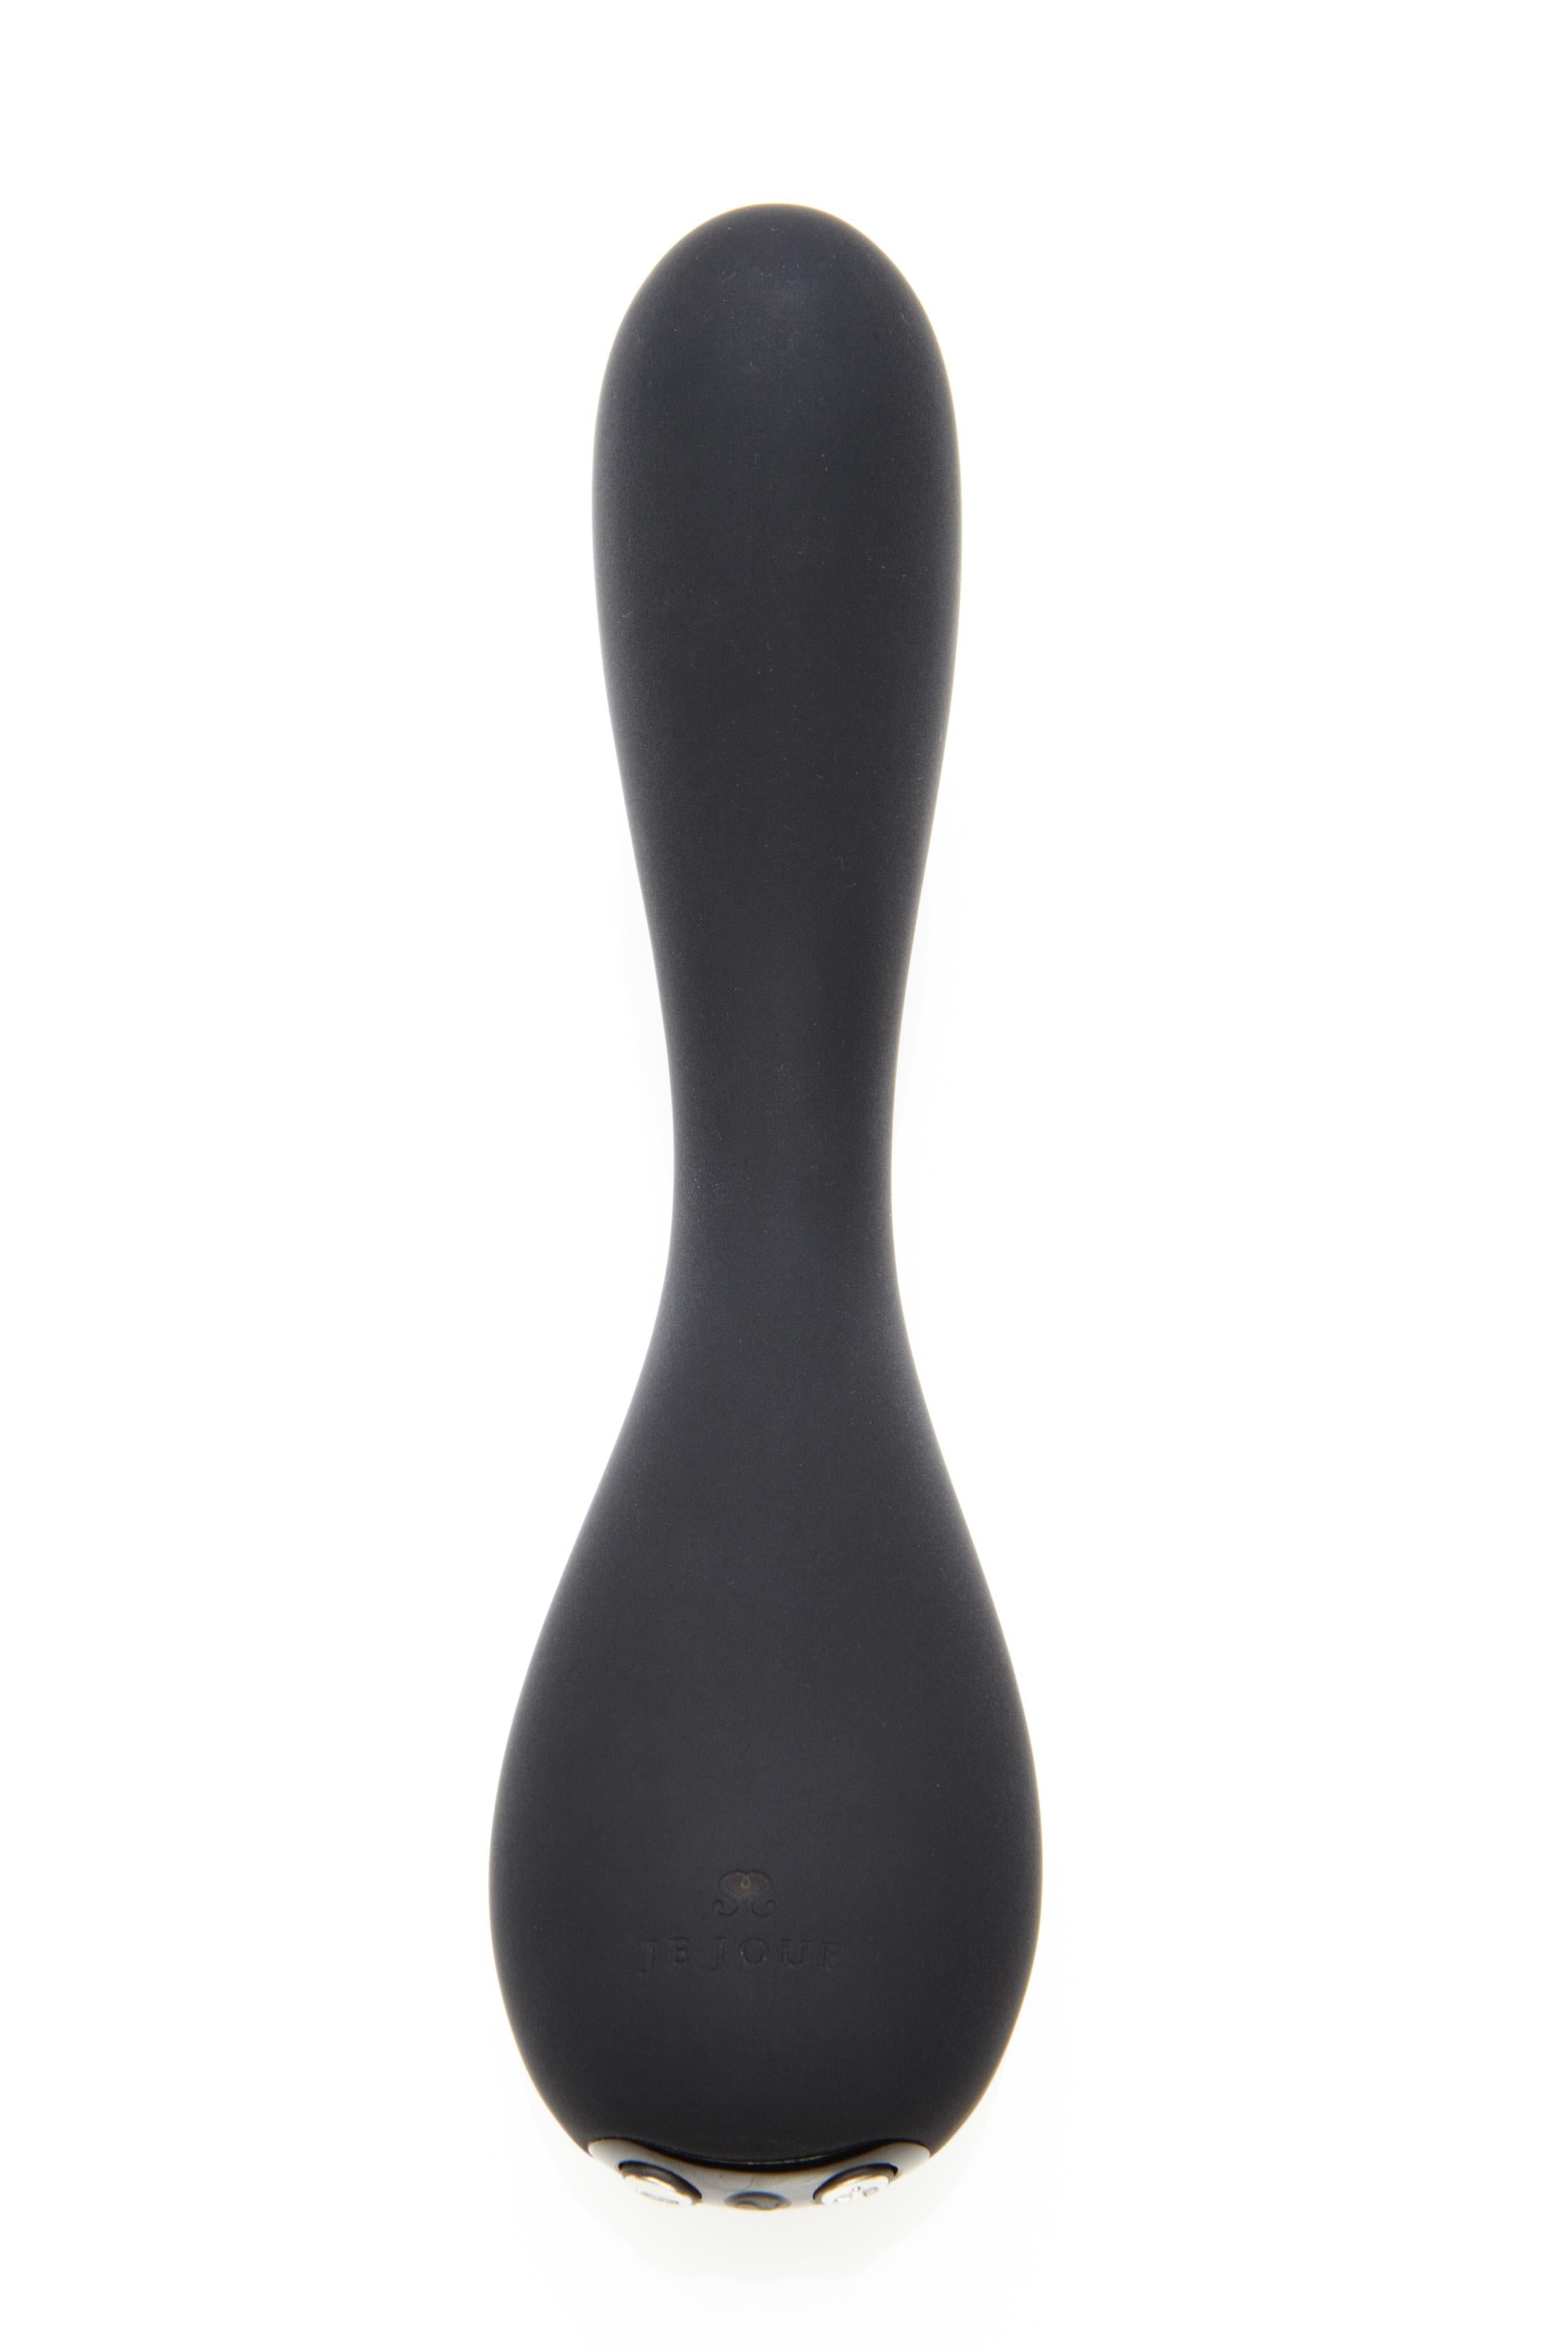 Uma G-Spot Vibrator - The Ultimate Pleasure Black